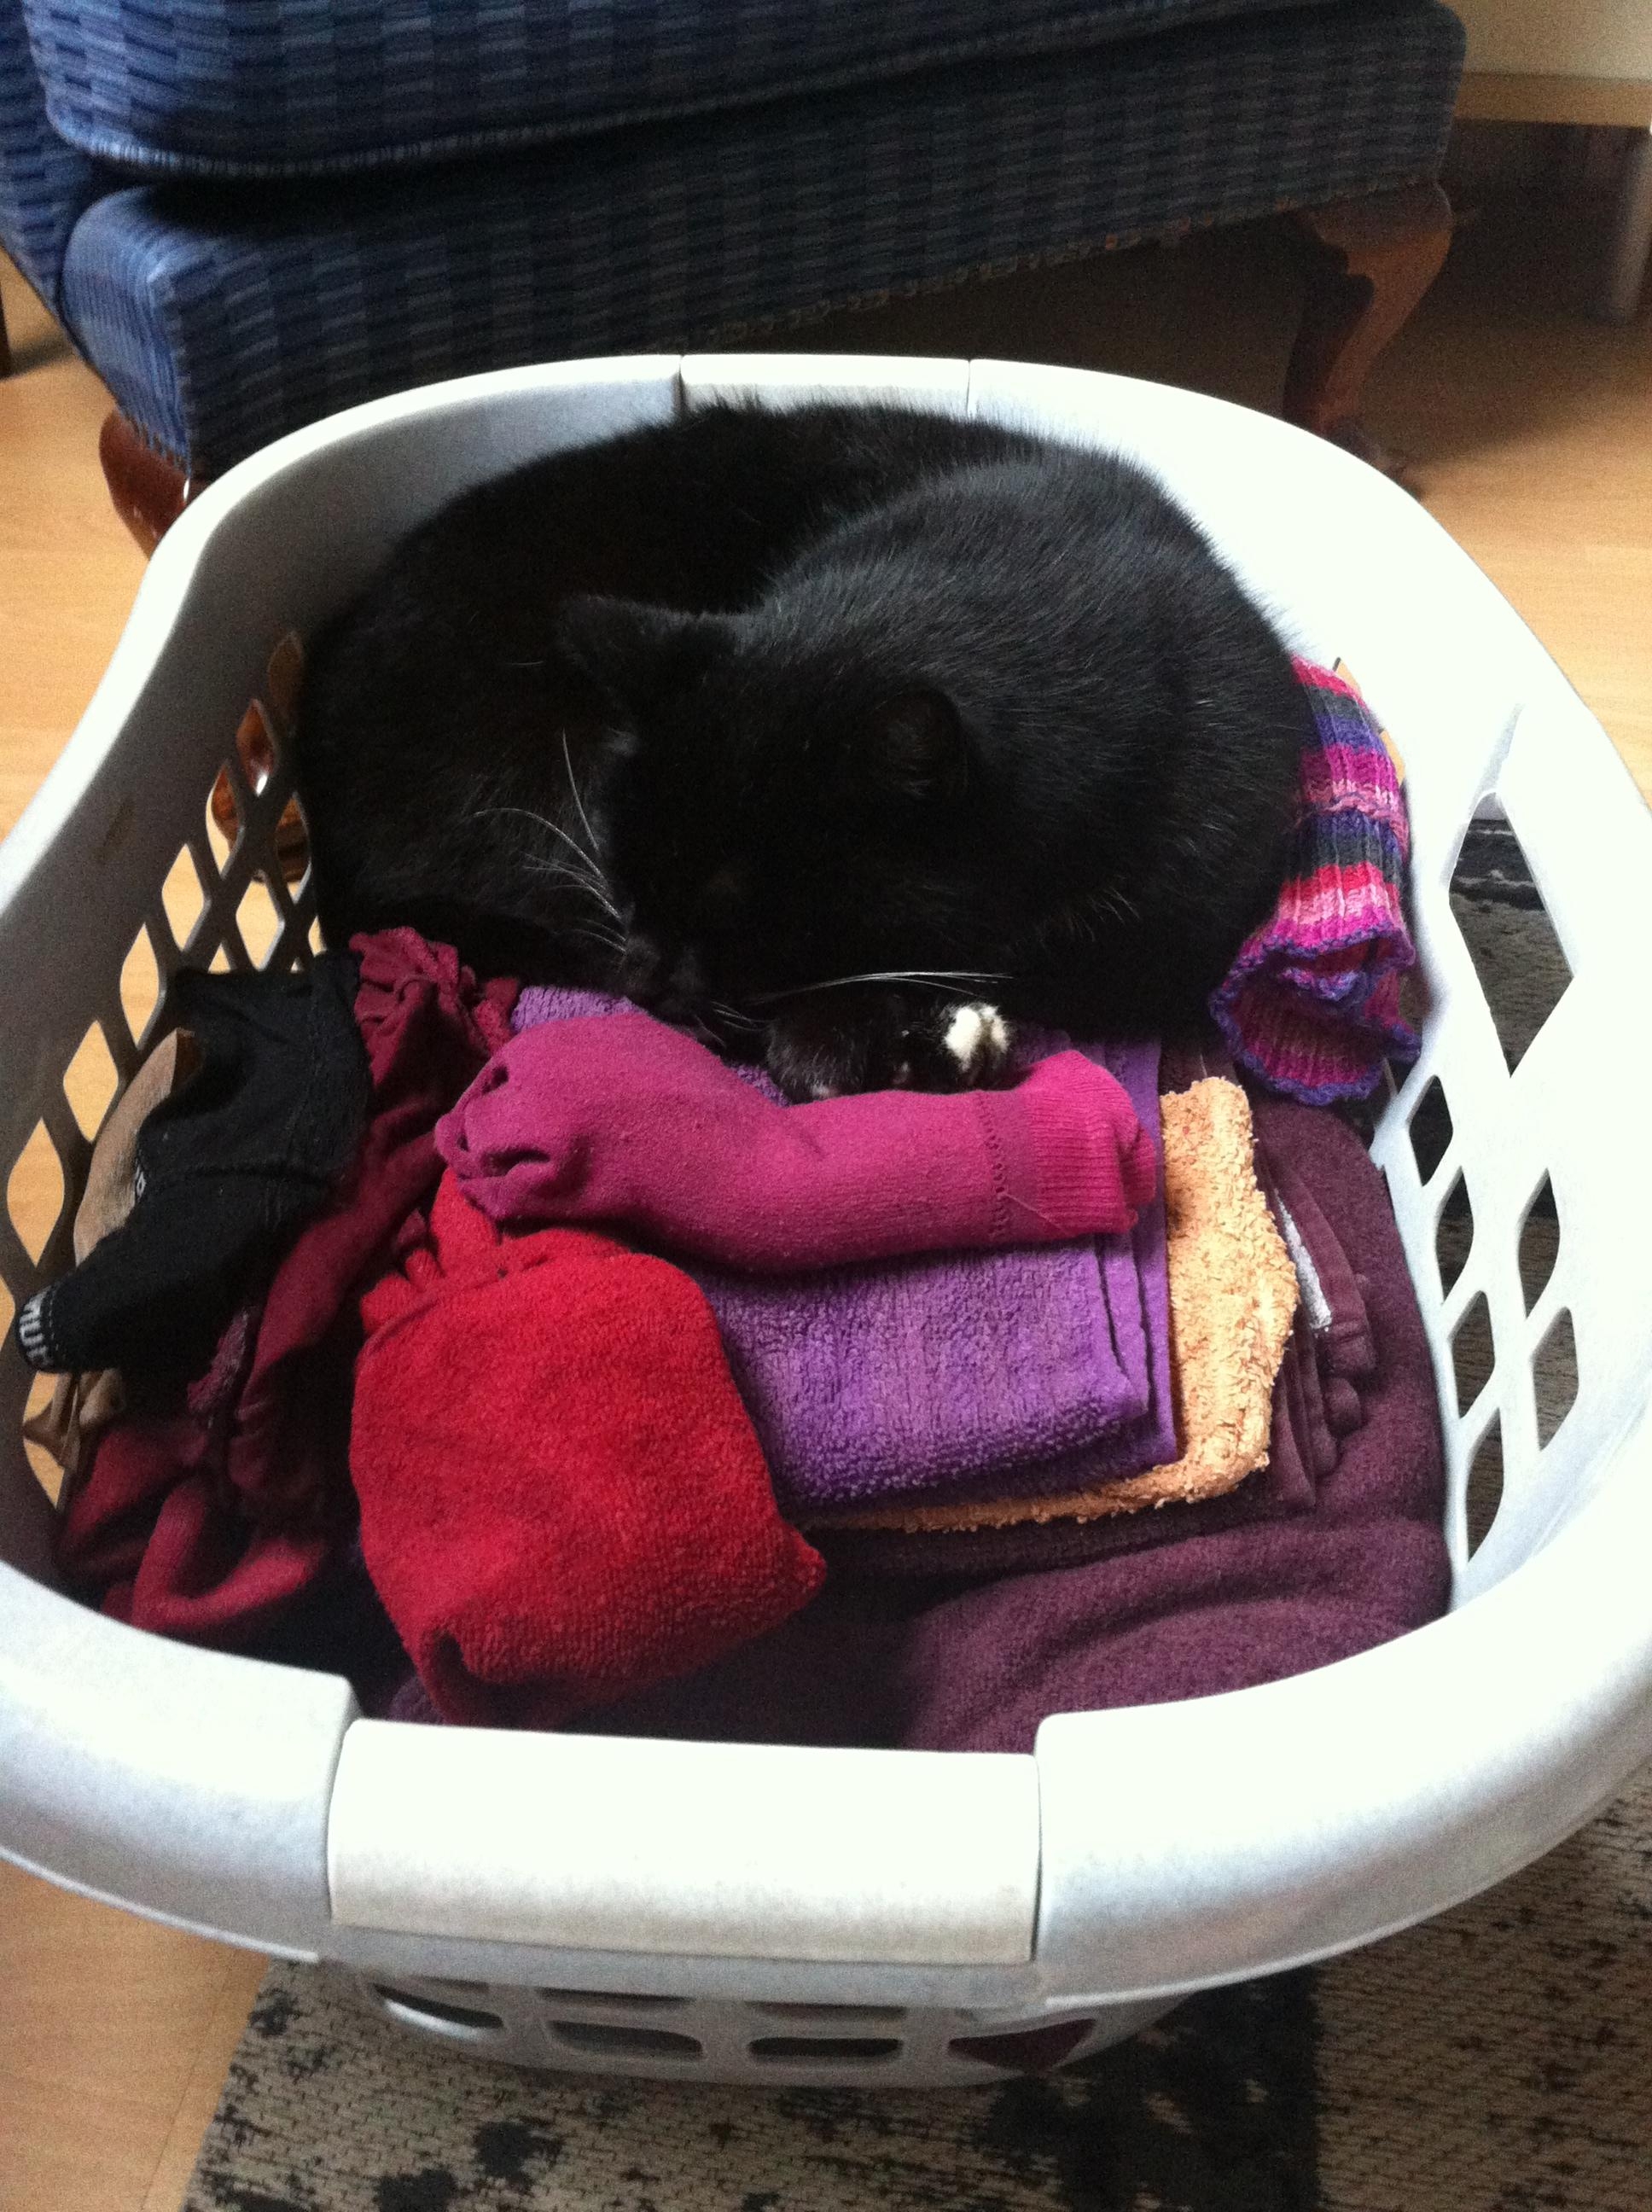 Wer schläft schon im Katzenbett?! #catcontent #cat #Wäscheistbequemer